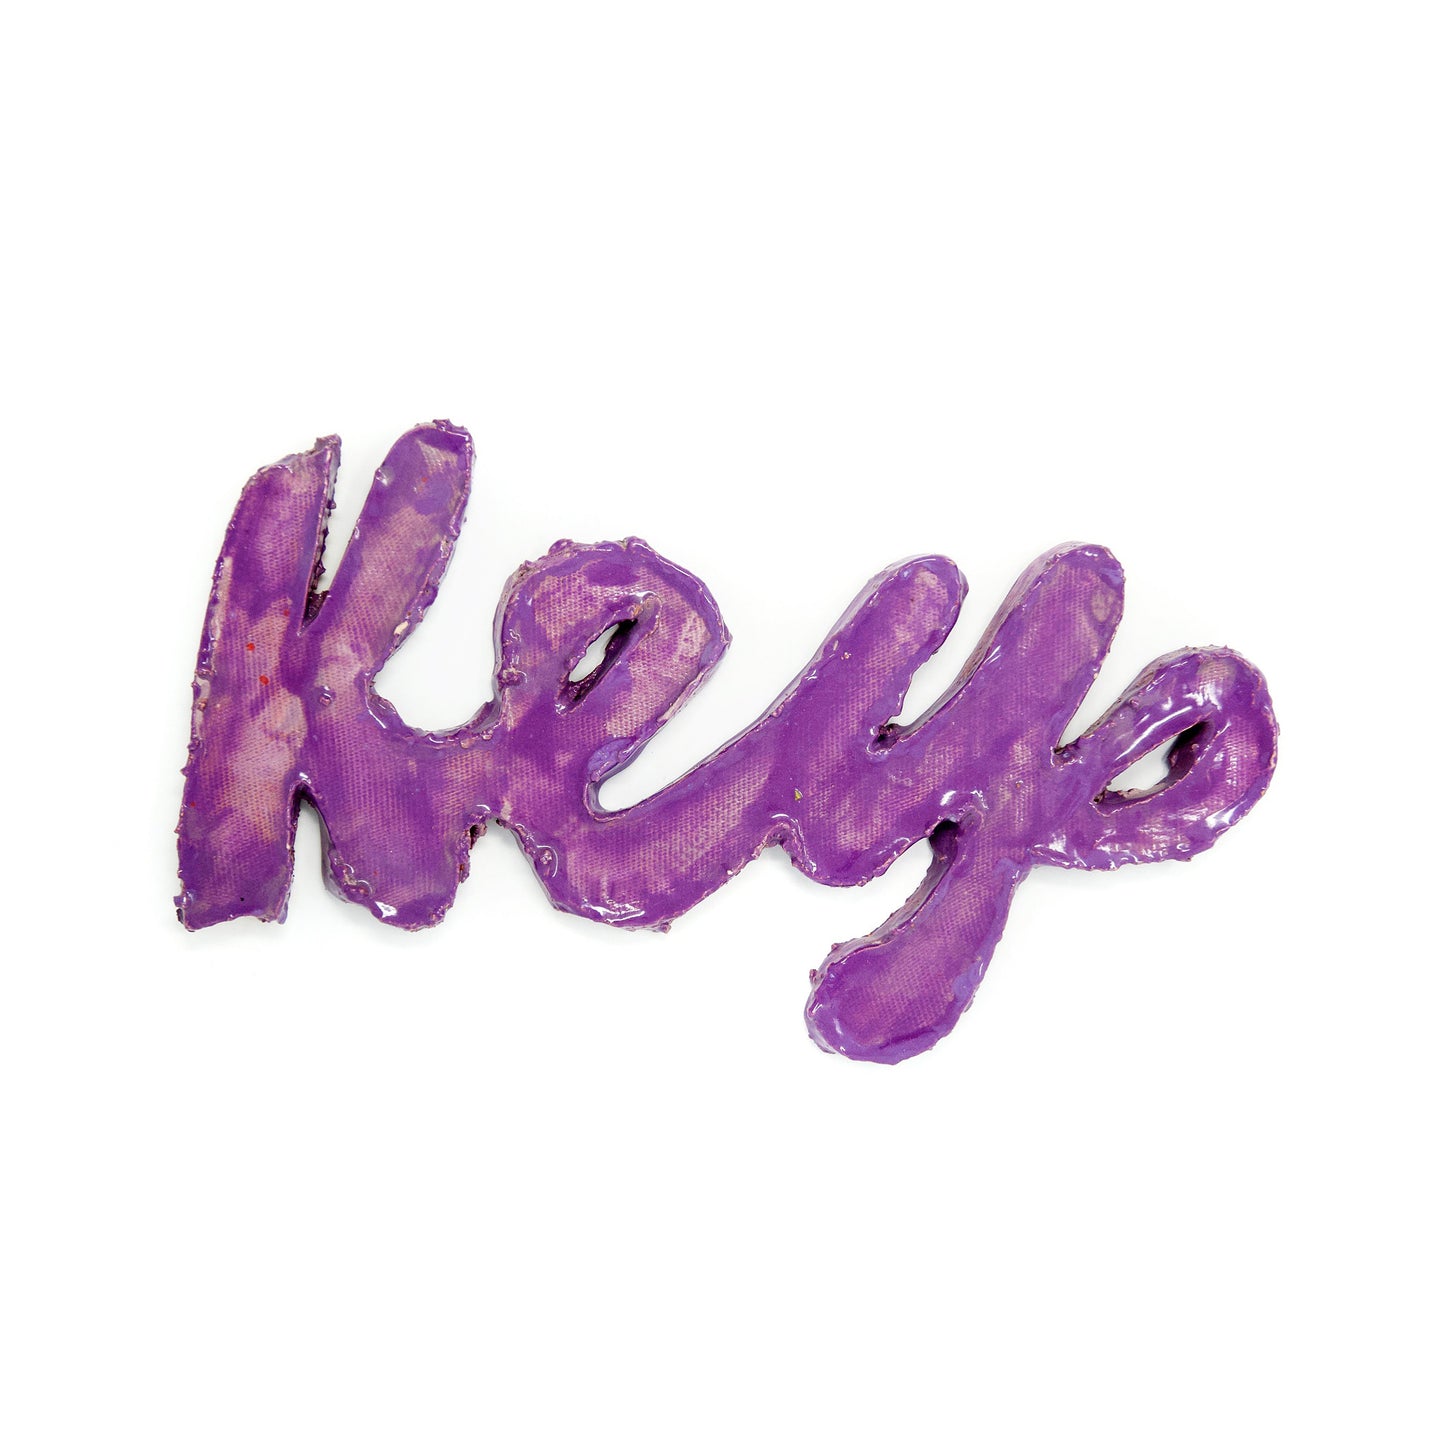 Keys (S2207)